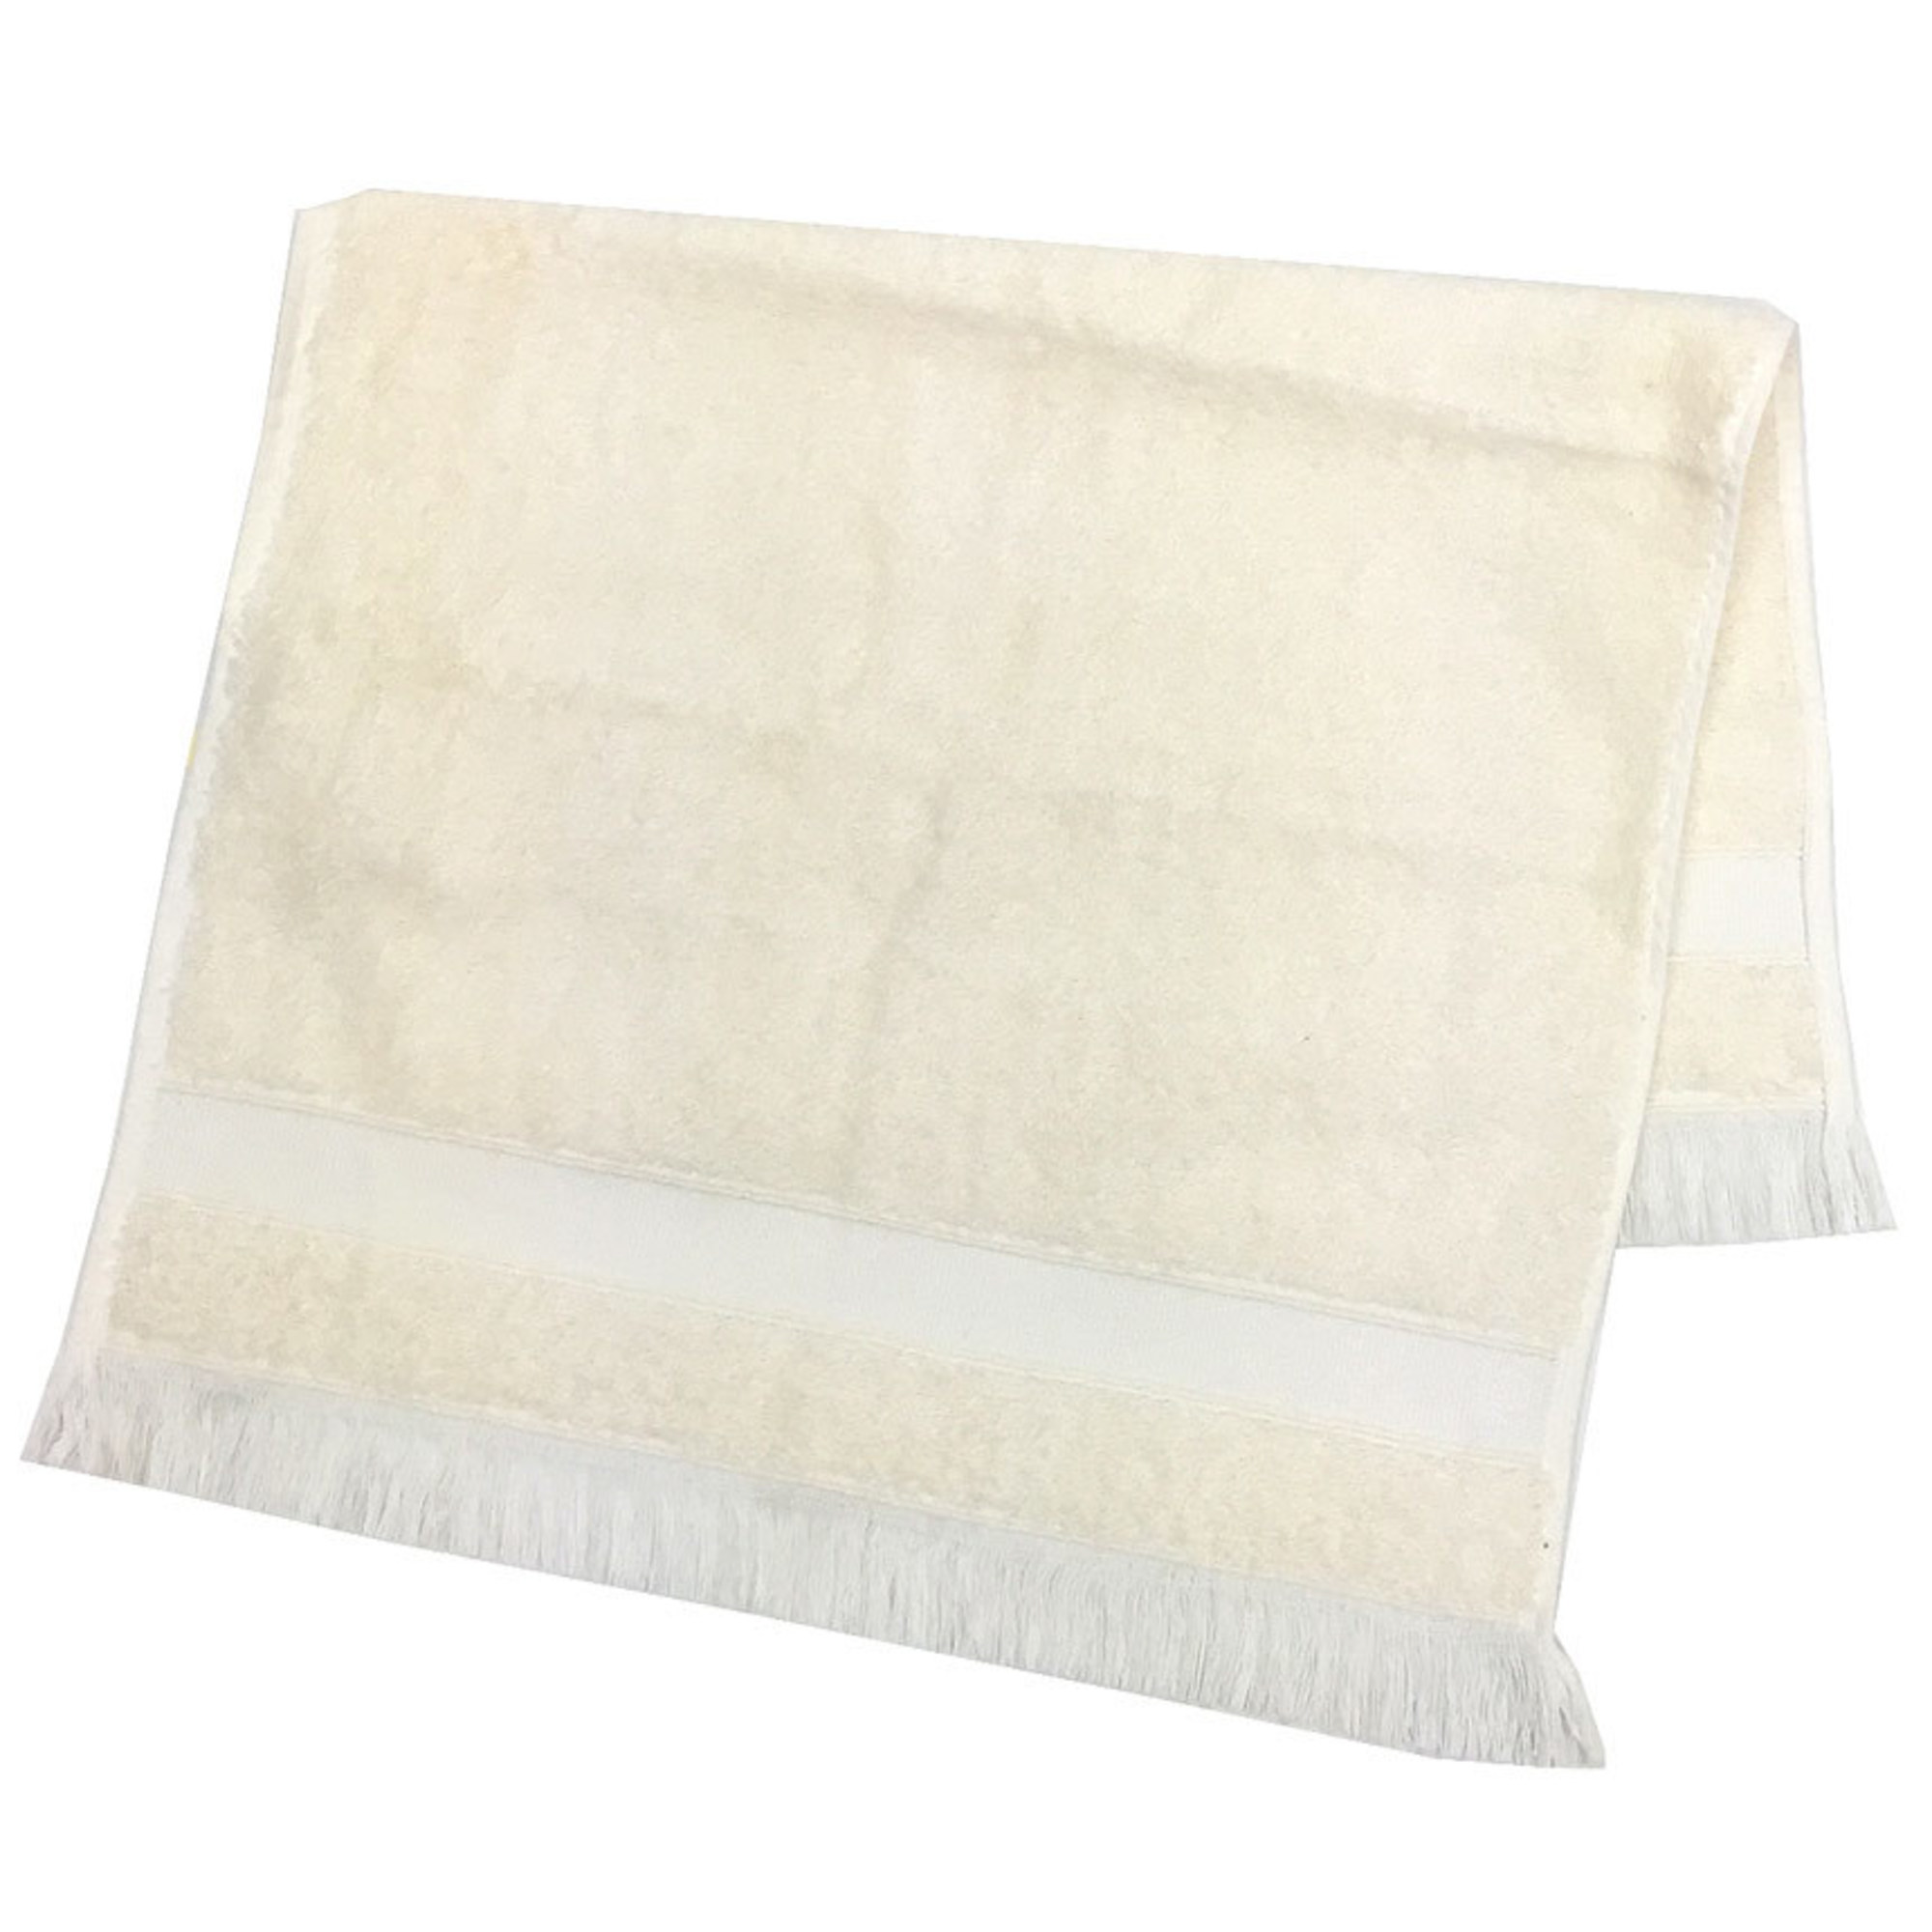 HERMES Face Towel SERVIETTE INVITE 100930M 02 Cotton Silk Ivory COCO Men's Women's Unisex